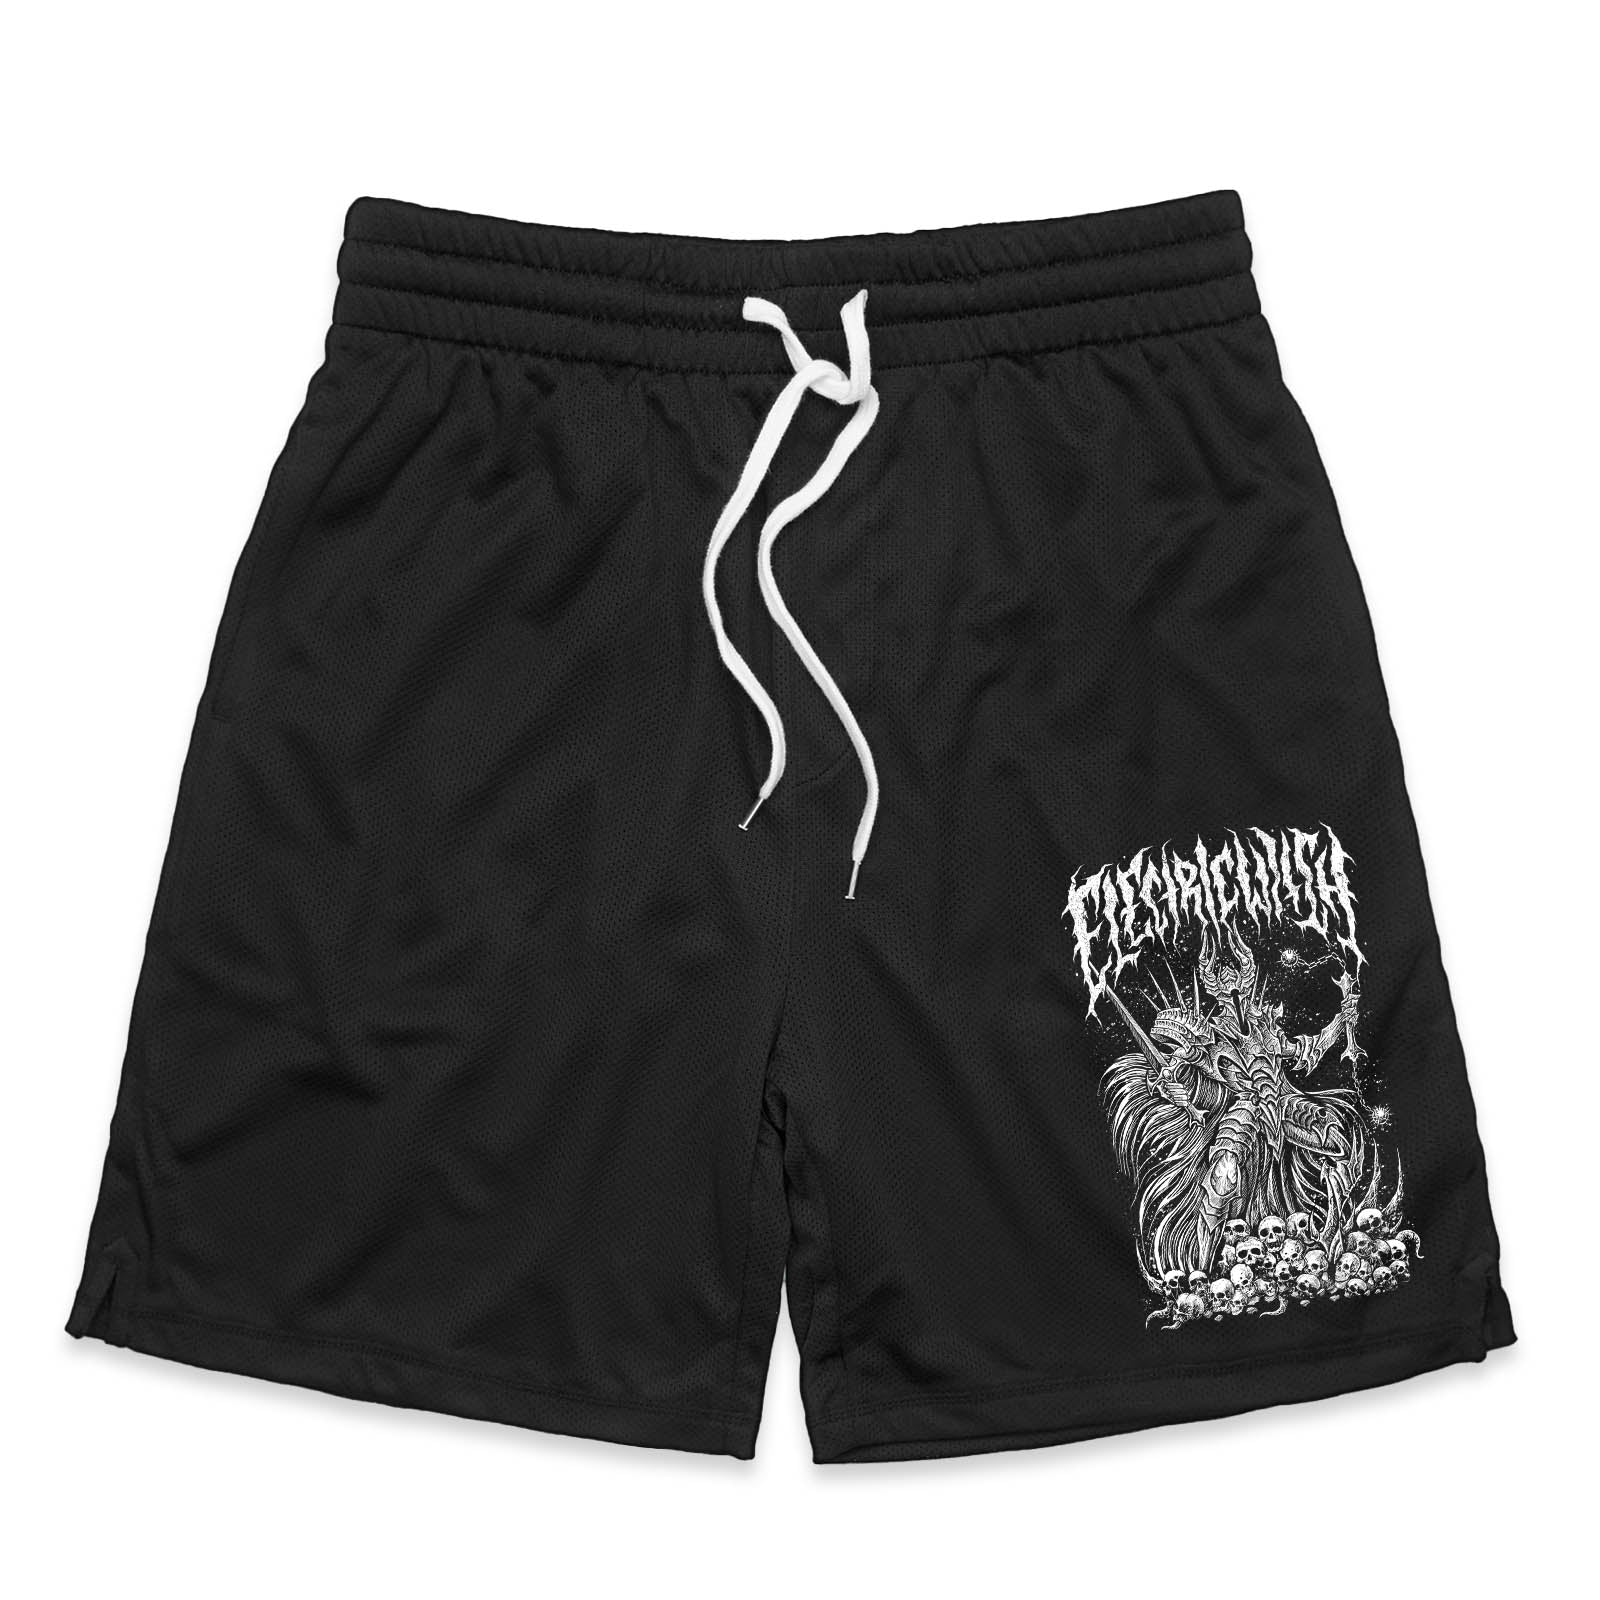 Demon Slayer Gym Shorts